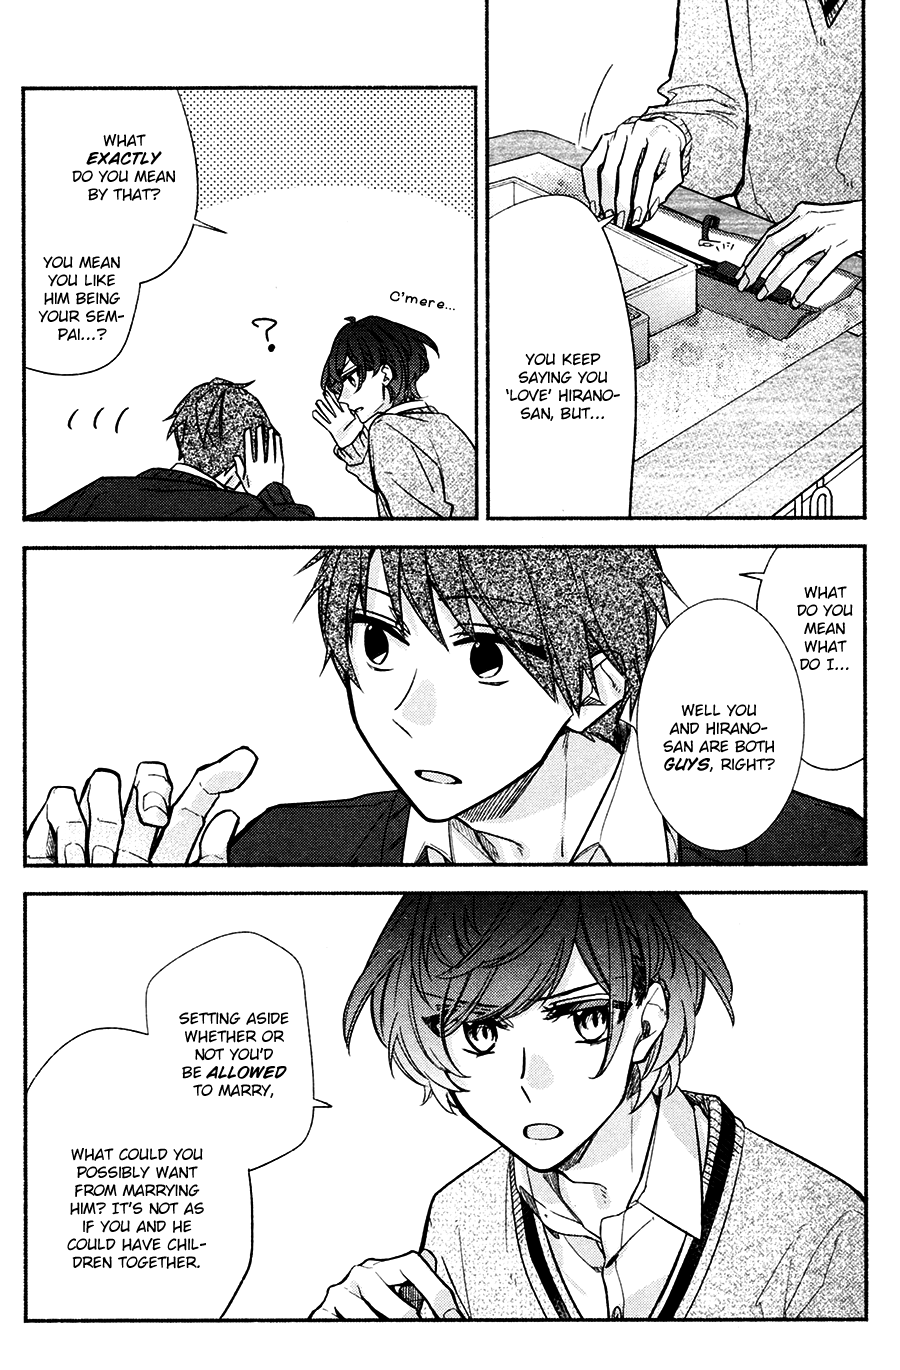 Hirano To Kagiura - 3 page 21